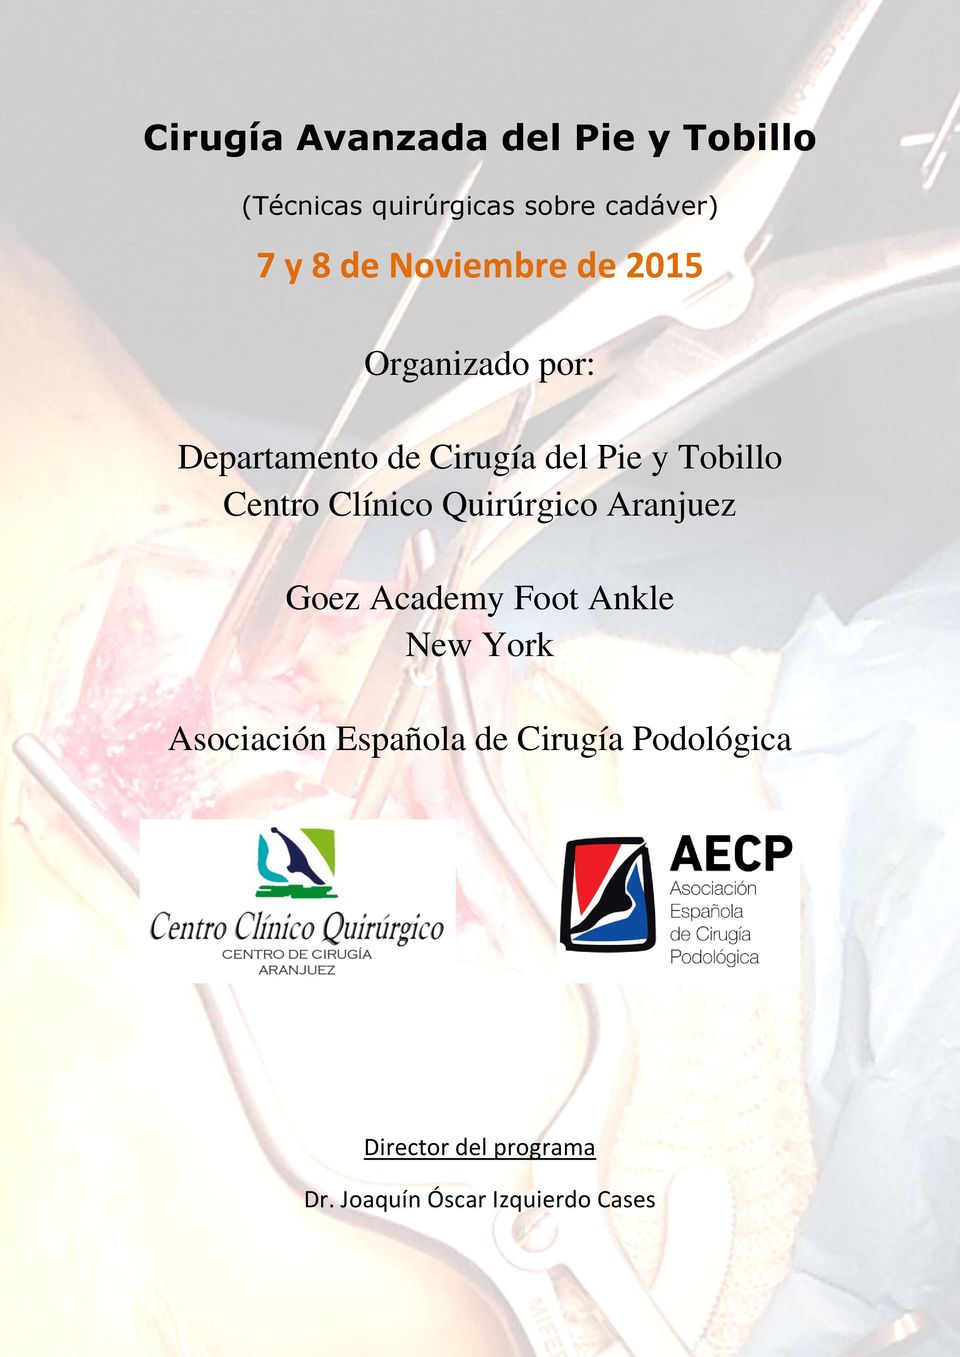 Centro Clínico Quirúrgico Aranjuez Goez Academy Foot Ankle New York Asociación